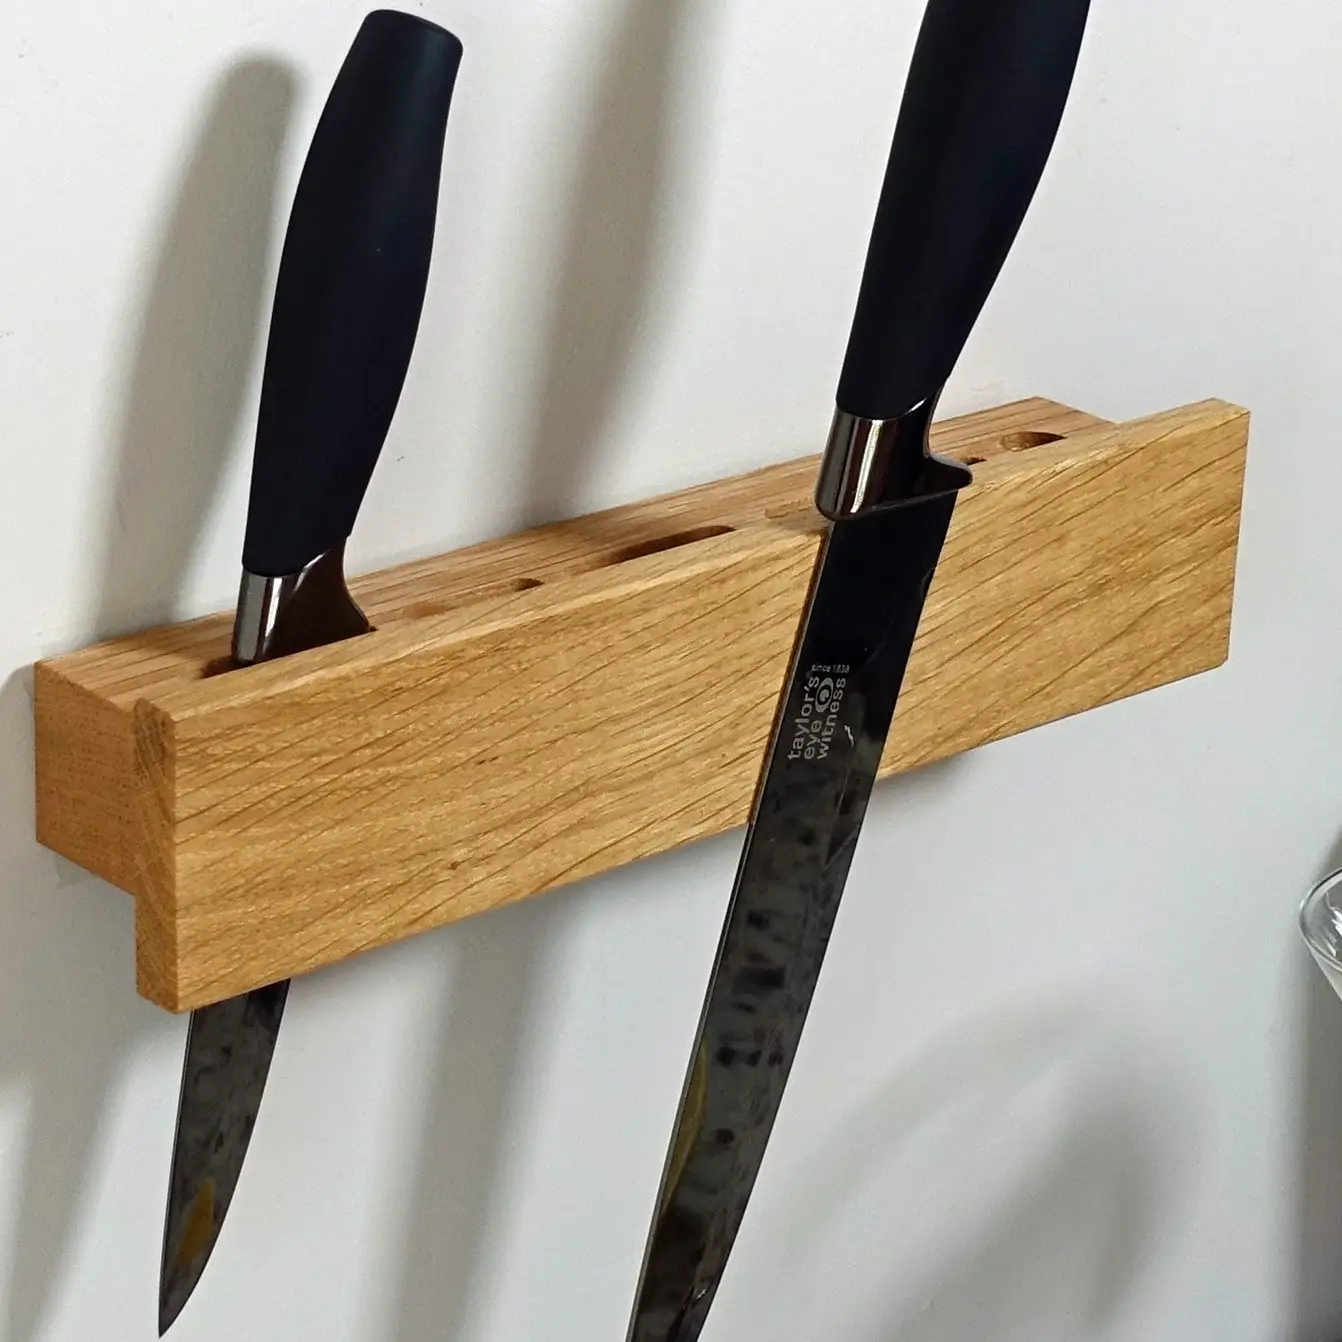 रसोई लकड़ी के चुंबकीय चाकू रैक चाकू ब्लॉक स्टैंड लकड़ी चुंबकीय चाकू धारक के लिए रसोई काउंटर